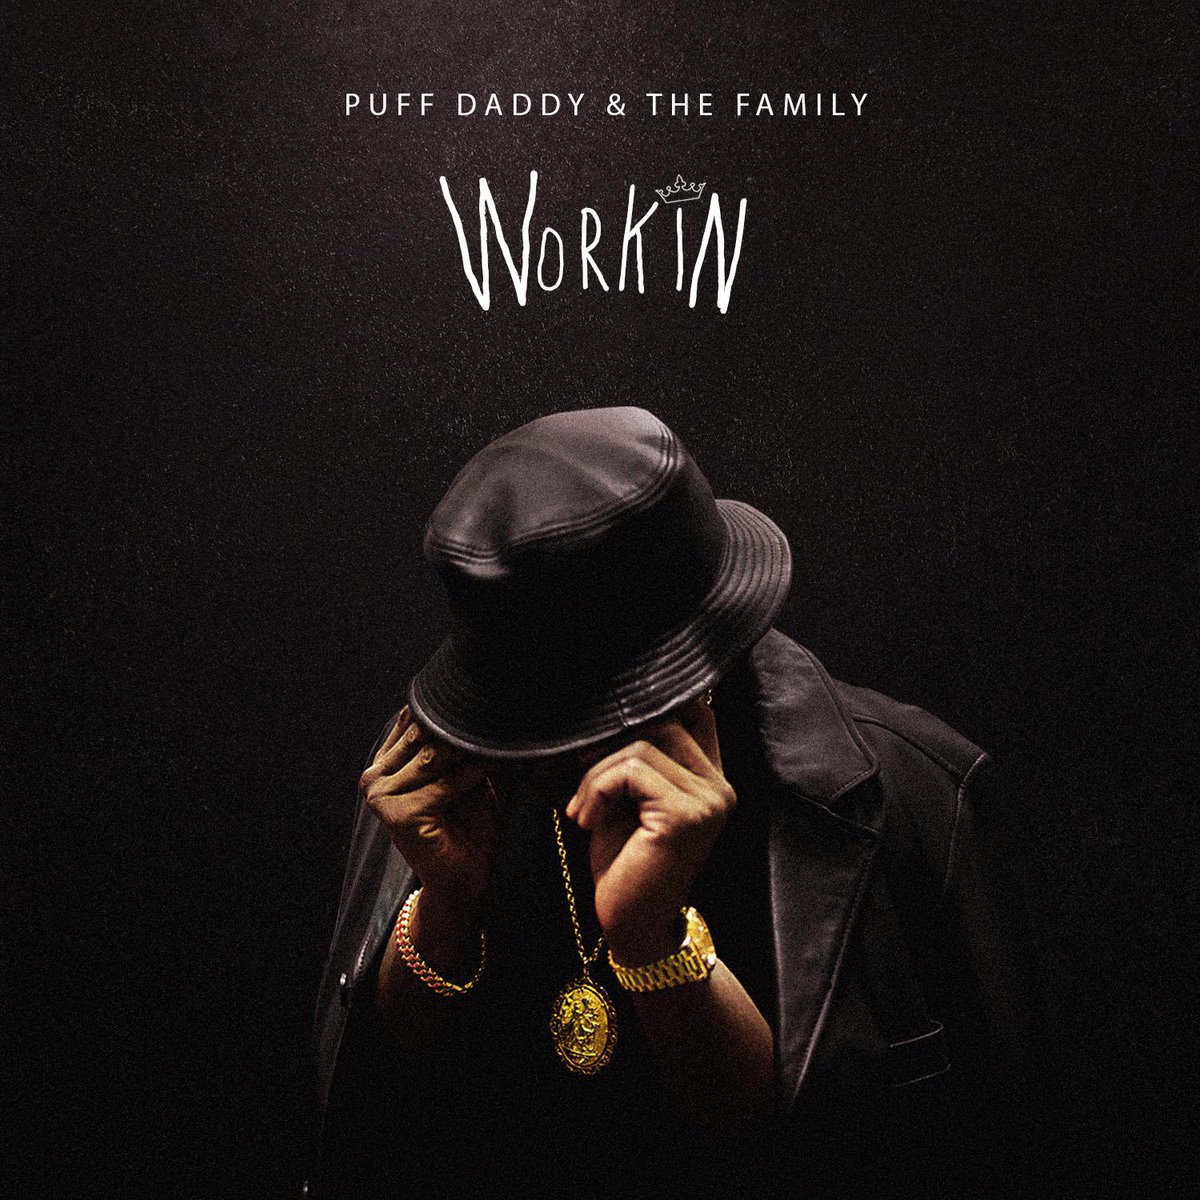 RT @BadBoyRecords: Listen to a sneak peek of @iamdiddy's (#PuffDaddyAndTheFamily) new track #Workin | http://t.co/S9xVxaXj0D http://t.co/kf…